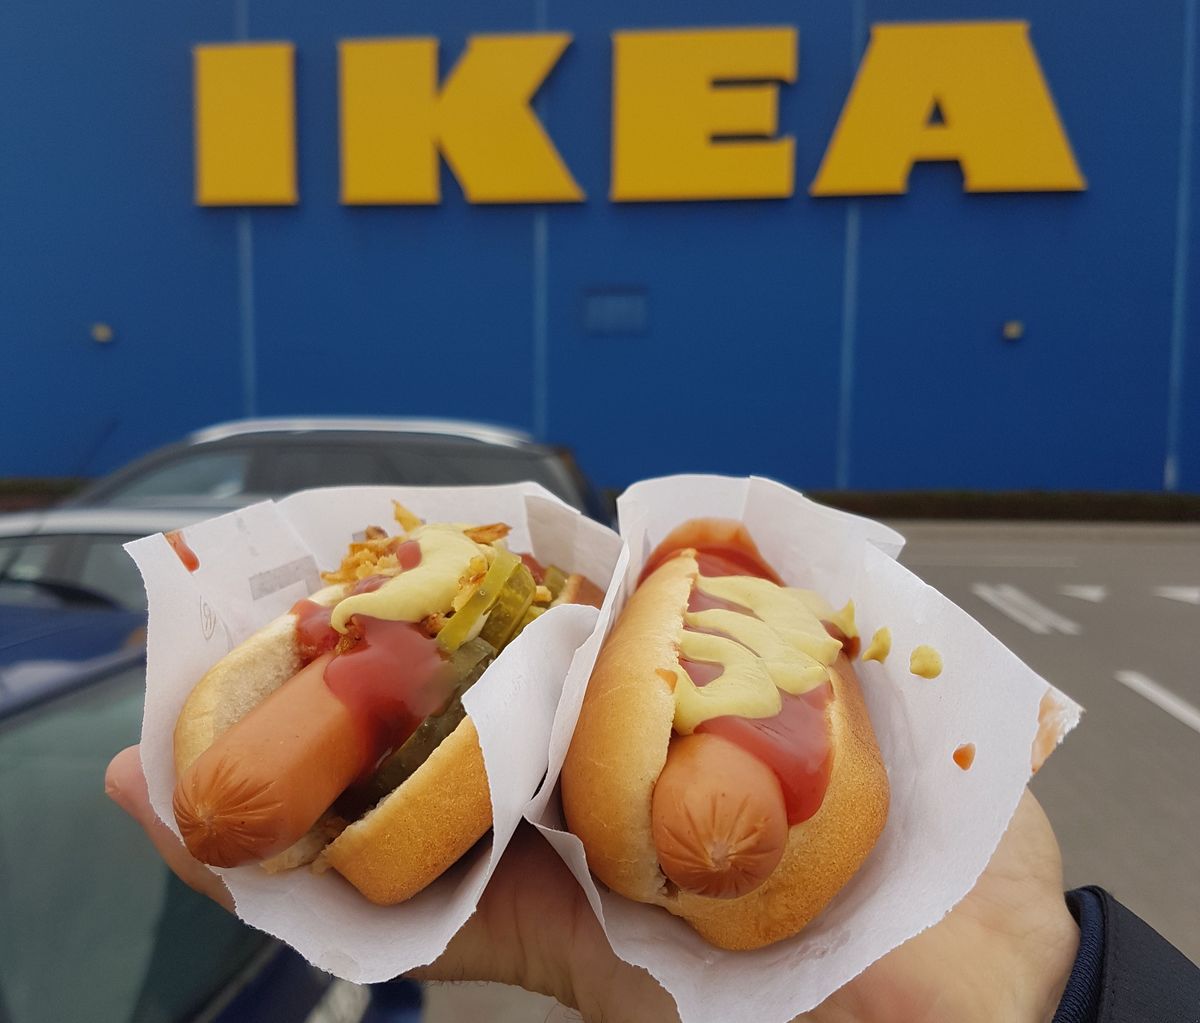 Hot dog z Ikei, czyli najlepiej wydana złotówka?